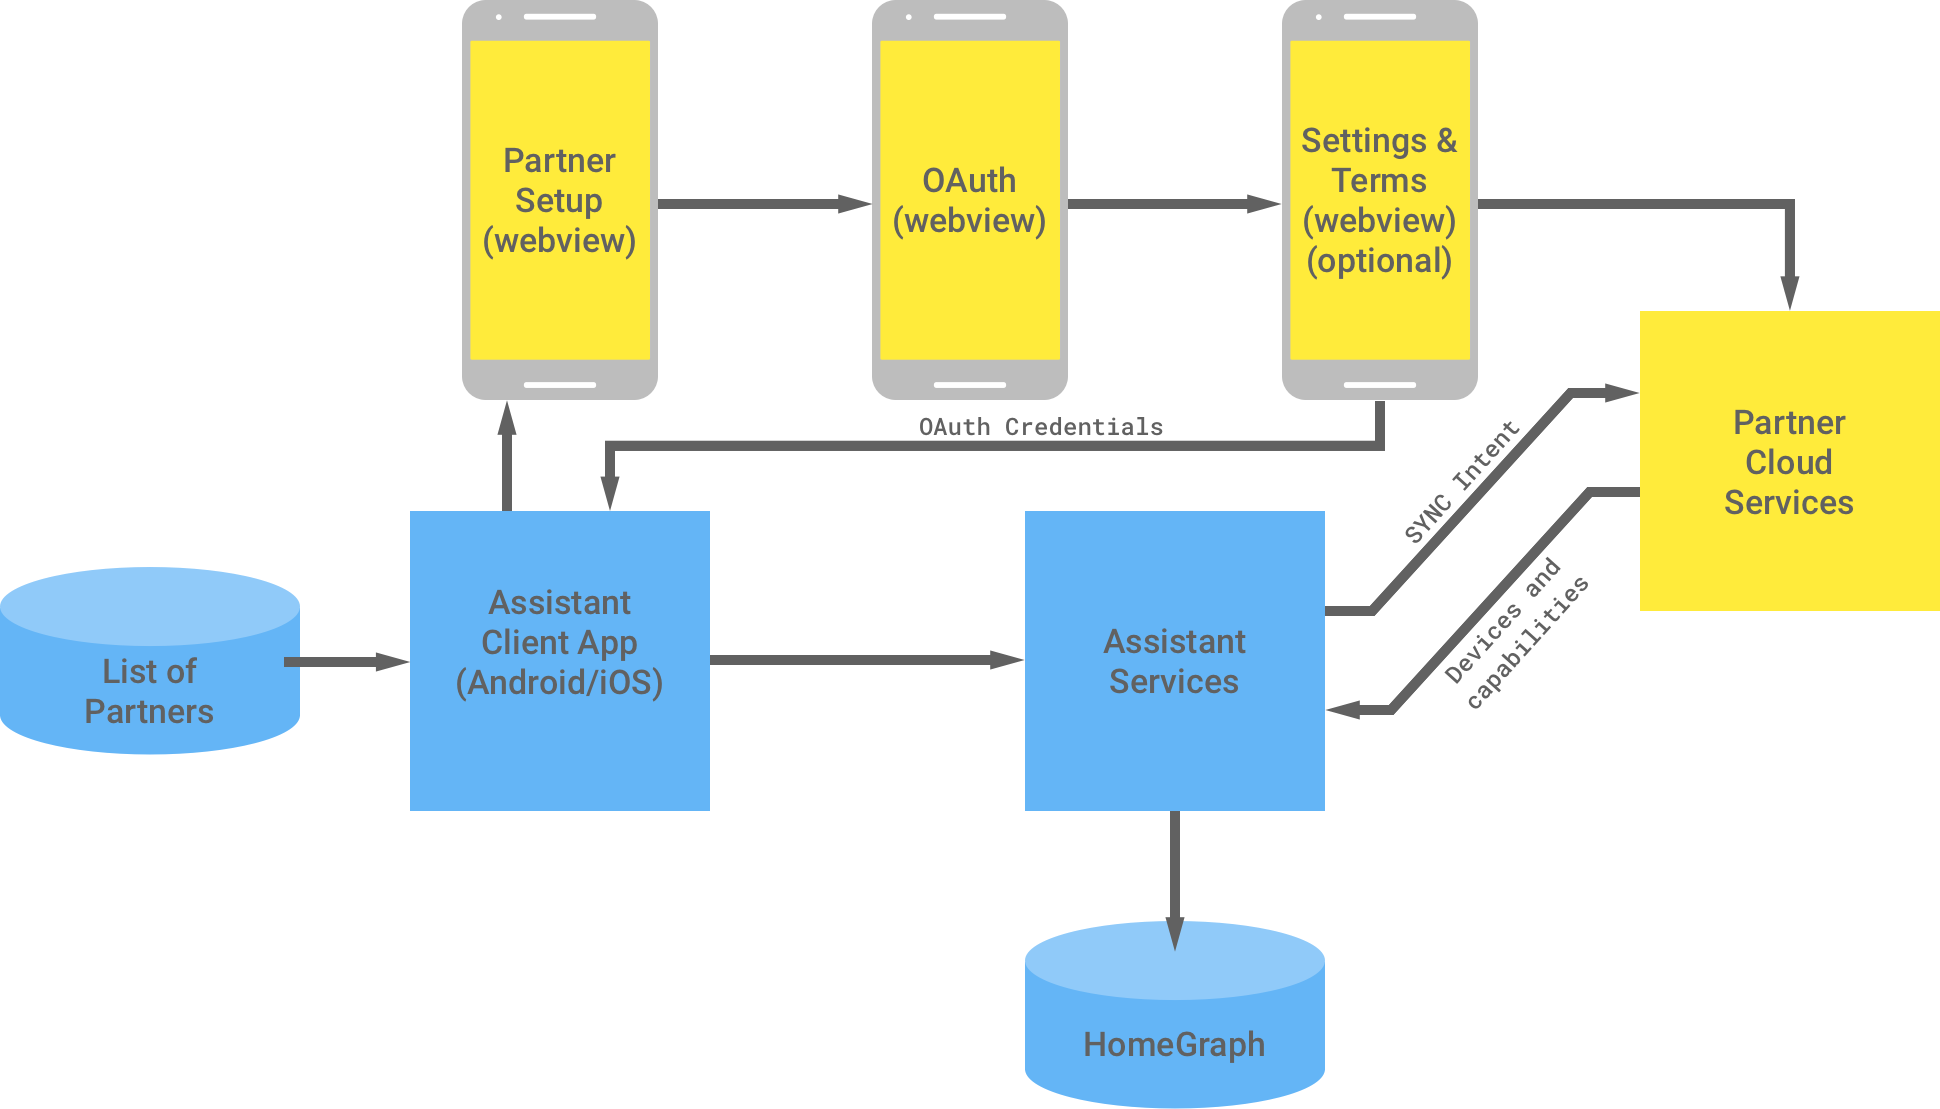 Diese Abbildung zeigt die Interaktion zwischen der Google-Infrastruktur und der Partnerinfrastruktur. In der Google-Infrastruktur ist eine Liste der Partner verfügbar, die für die Assistant-Client-App verfügbar sind und dann an die Partnerinfrastruktur weitergeleitet werden, um die OAuth-Authentifizierung abzuschließen. Die OAuth-Authentifizierung auf Partnerseite besteht aus der WebView für Partner, dem OAuth-WebView, den optionalen Einstellungen und Nutzungsbedingungen sowie den Cloud-Diensten des Partners. Die Partnerinfrastruktur gibt dann die OAuth-Anmeldedaten an die Assistant-Client-App zurück. Die Cloud-Dienste des Partners senden die verfügbaren Geräte und Funktionen an Assistant-Dienste, die die Informationen dann in der Home Graph-Konfiguration speichern.